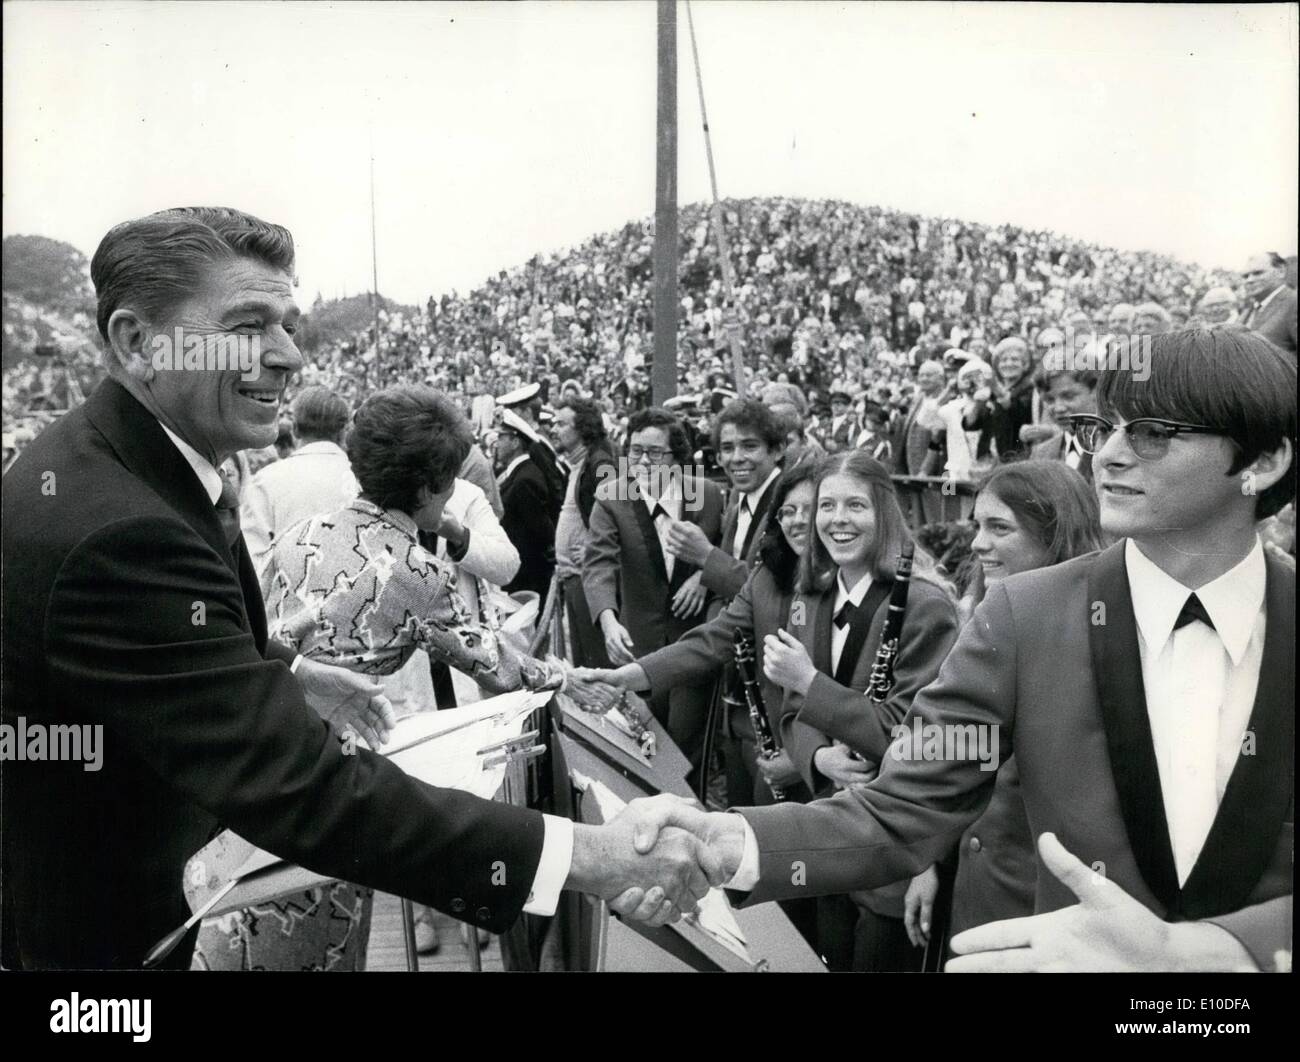 Juillet 07, 1972 - Amériques journée célébrée en indépendant depuis 1912 ; l'Rebild american independent day a été célébré dans les collines à Rebild dans le Jutland et dans cette période, beaucoup d'américains célèbres avait eu lieu il speeched par exemple Richard Nixon. Cette année s'est tenue le mainspeech Danny Kaye et bien sûr il a été un grand succès lorsque le grand artiste connu pour son goût de l'enfance et de l'humanité mis à son émission. Entre autres le gouverneur de Californie a été speechers Ronald Reagan et comme d'habitude, la famille royale a assisté à la célébration indépendant Banque D'Images